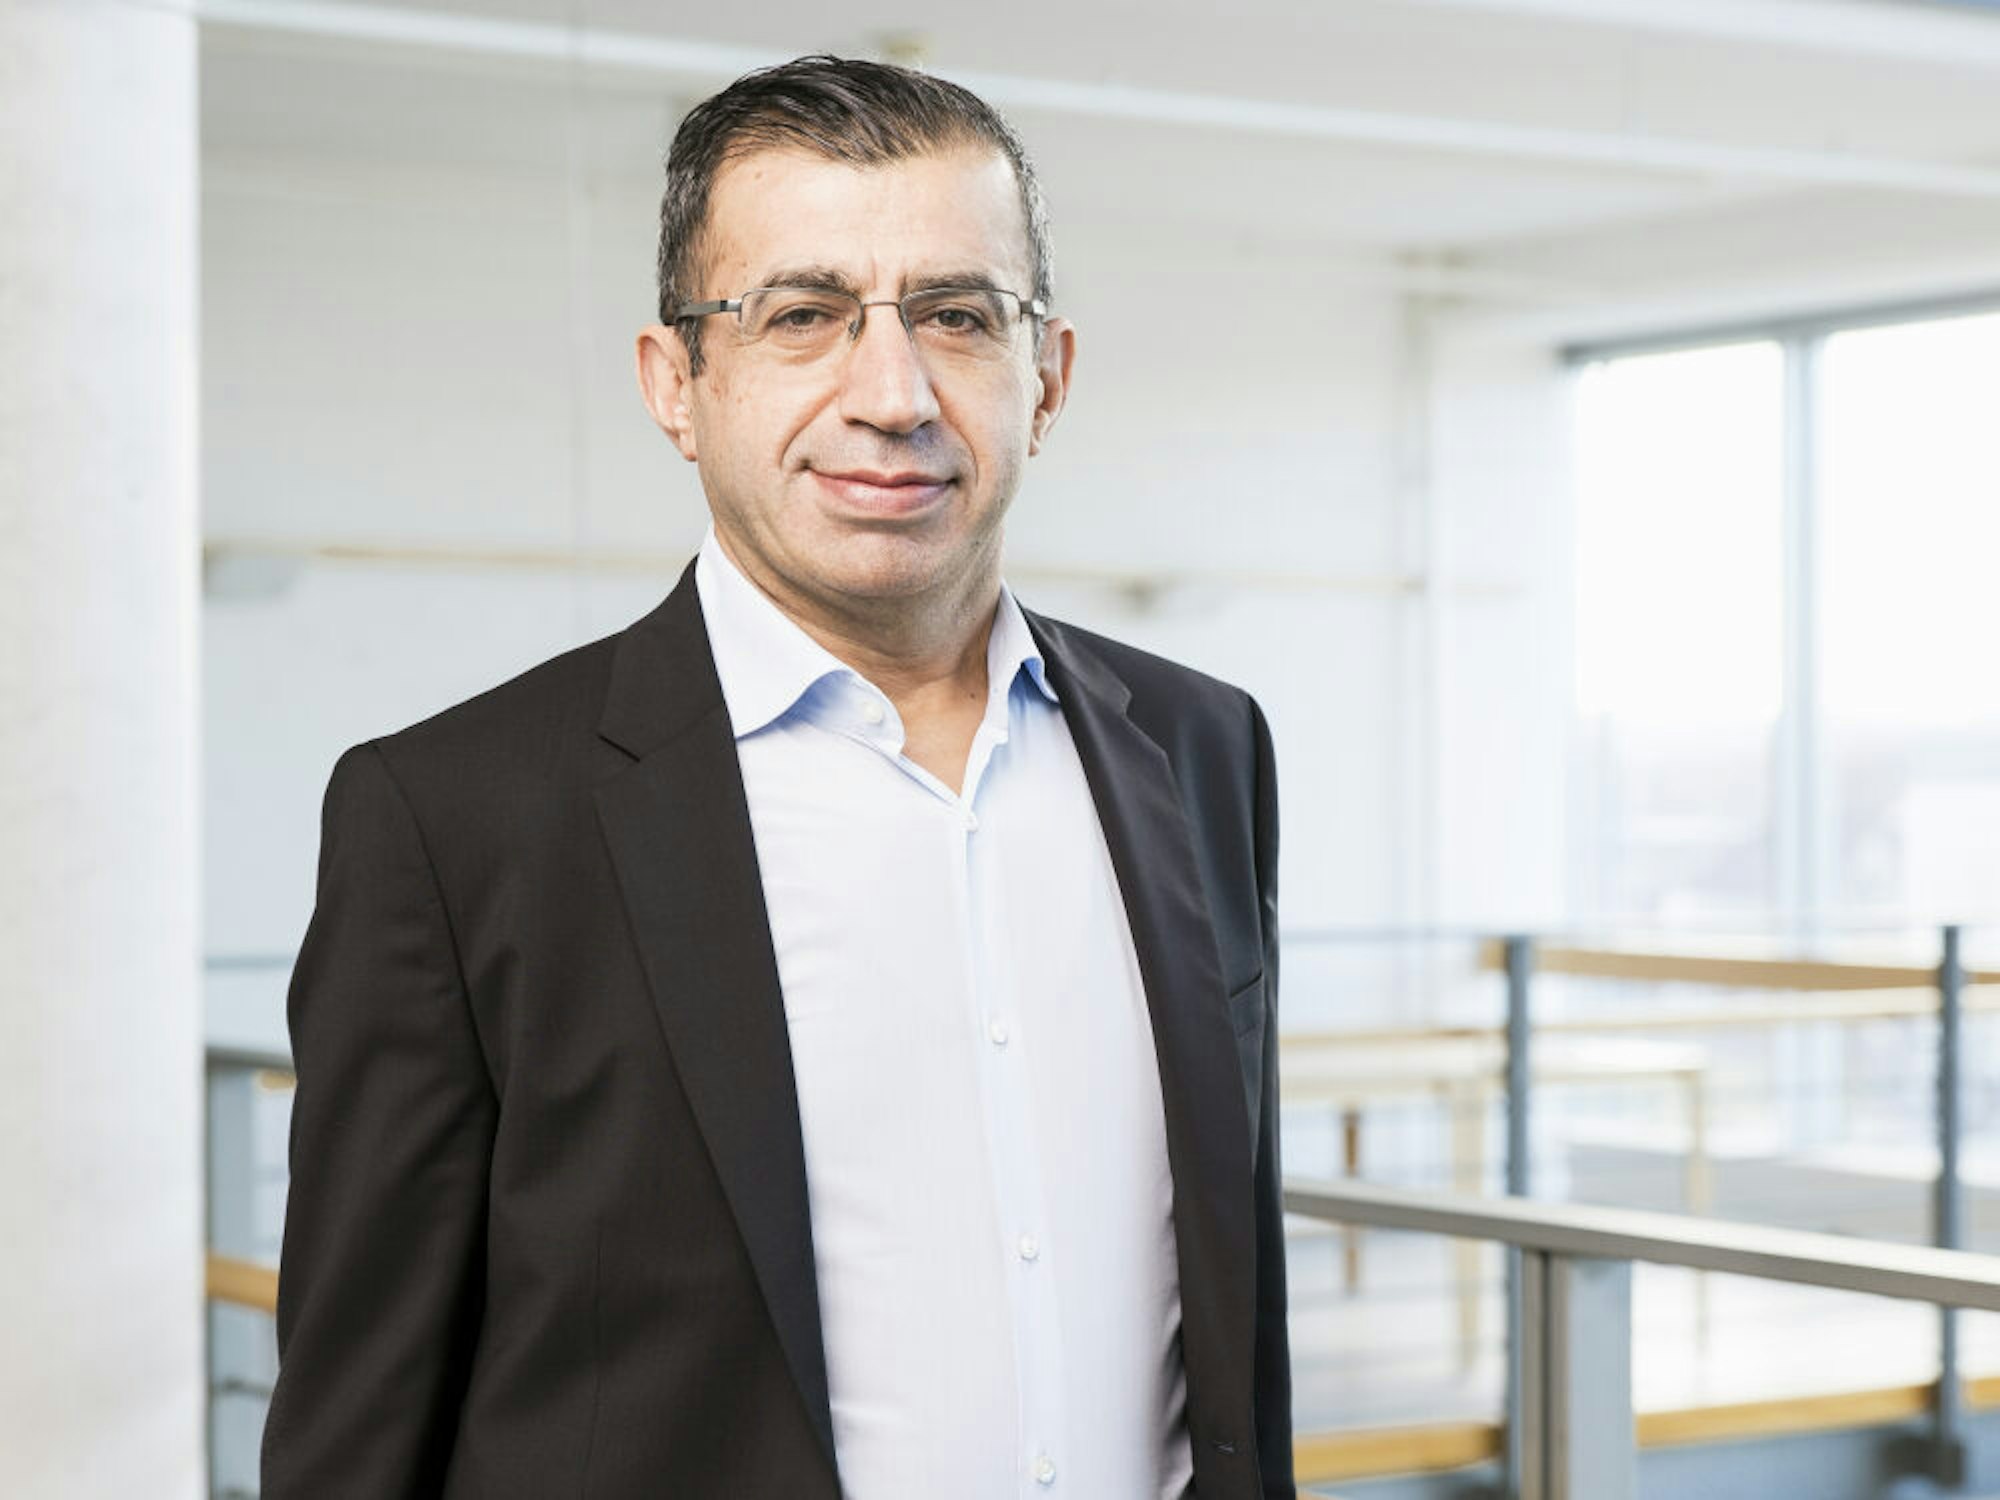 Ahmet Toprak ist Erziehungswissenschaftler an der FH Dortmund. Vorher hat er zehn Jahre als Anti-Gewalttrainer gearbeitet.